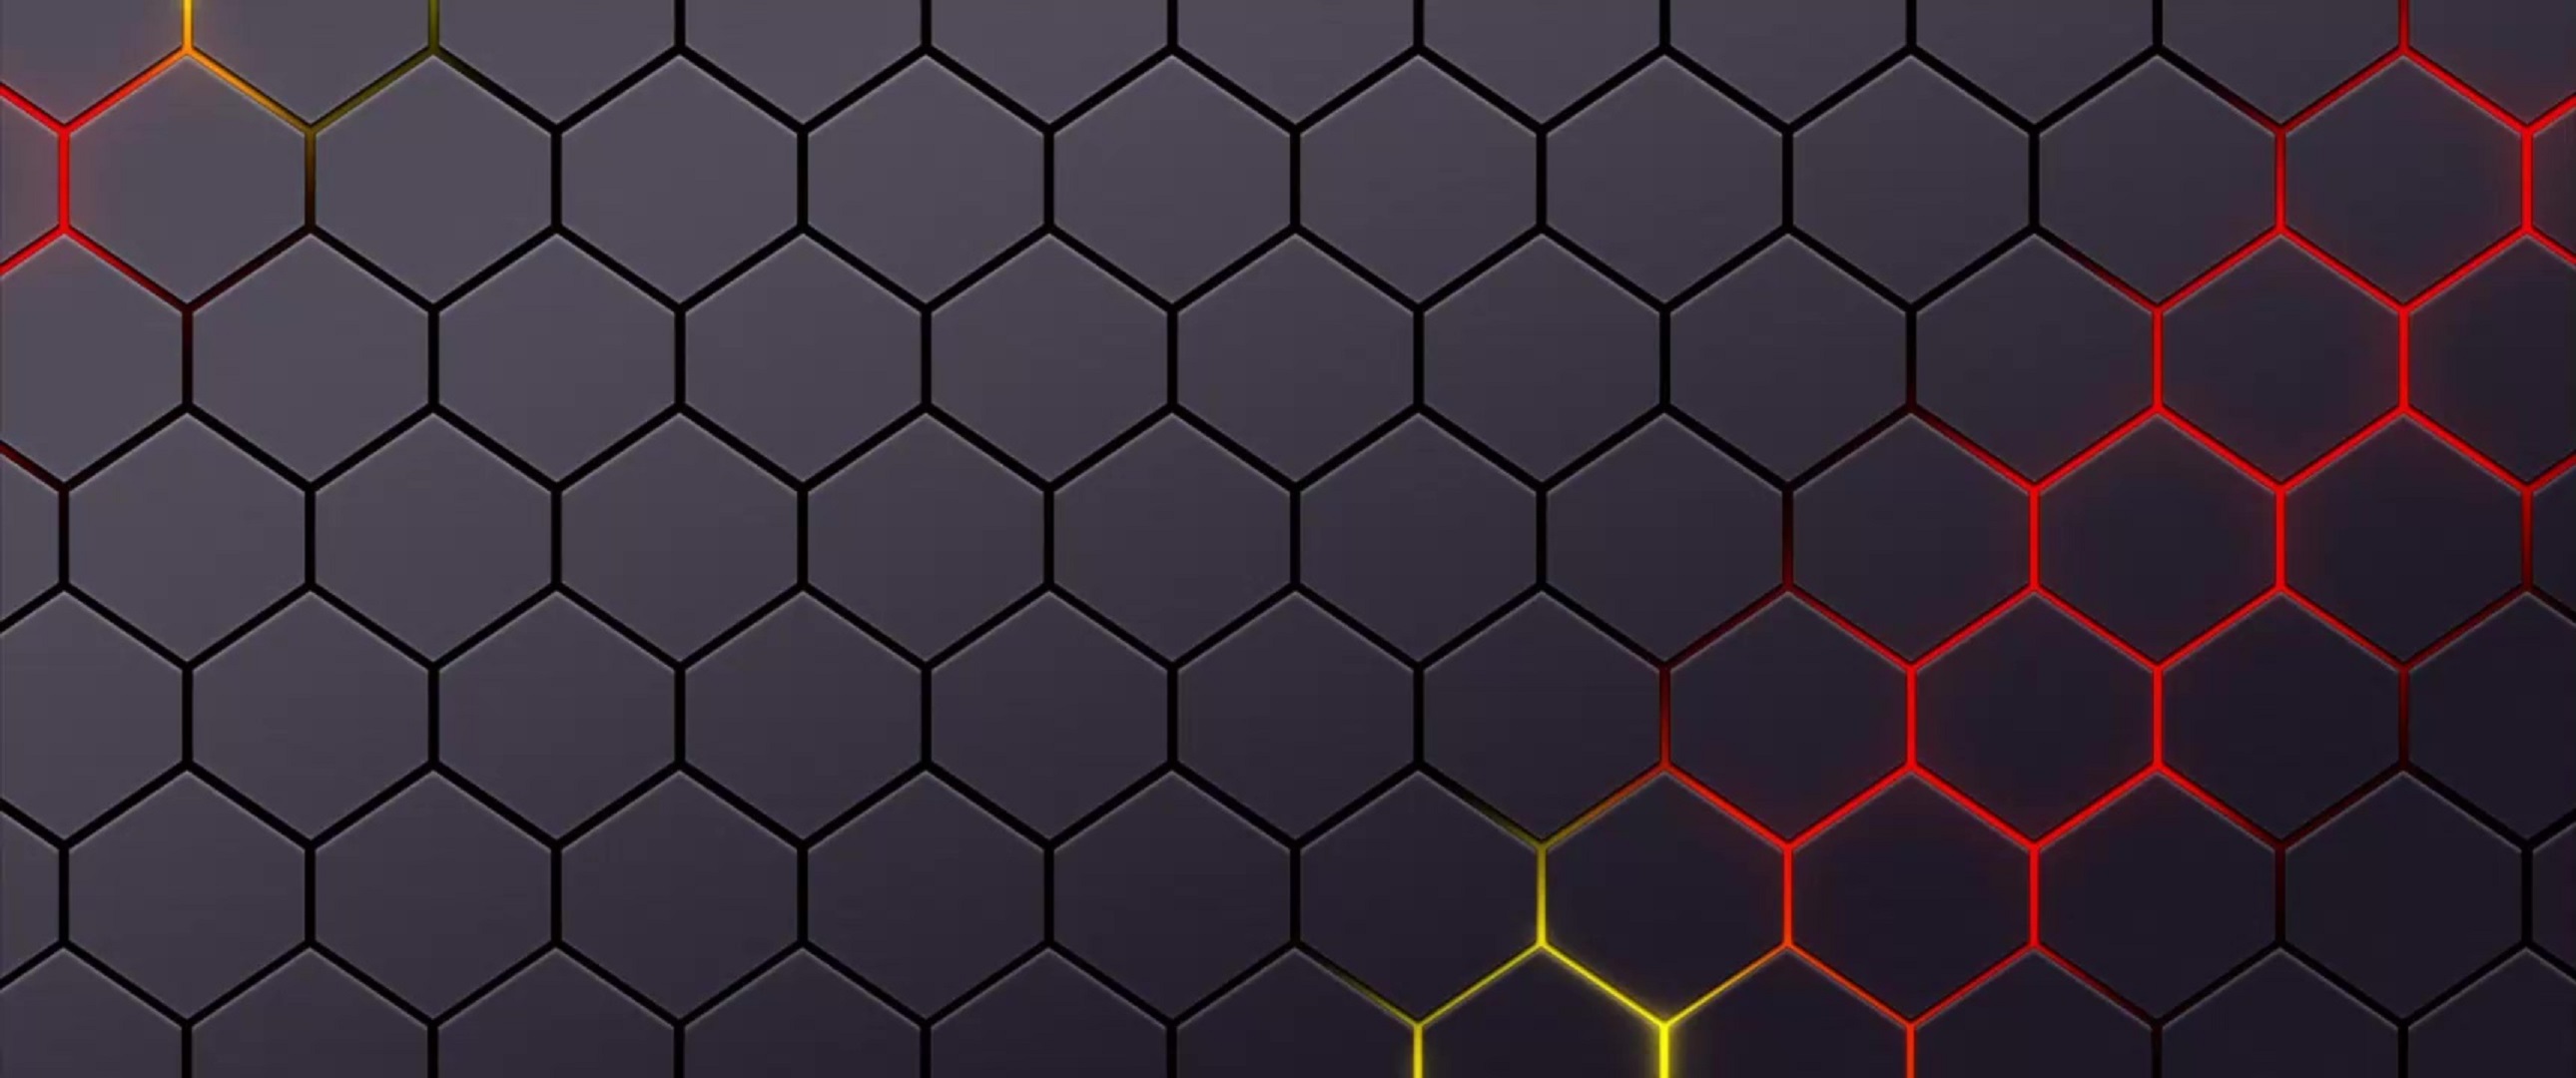 50 Hexagon Wallpaper  WallpaperSafari